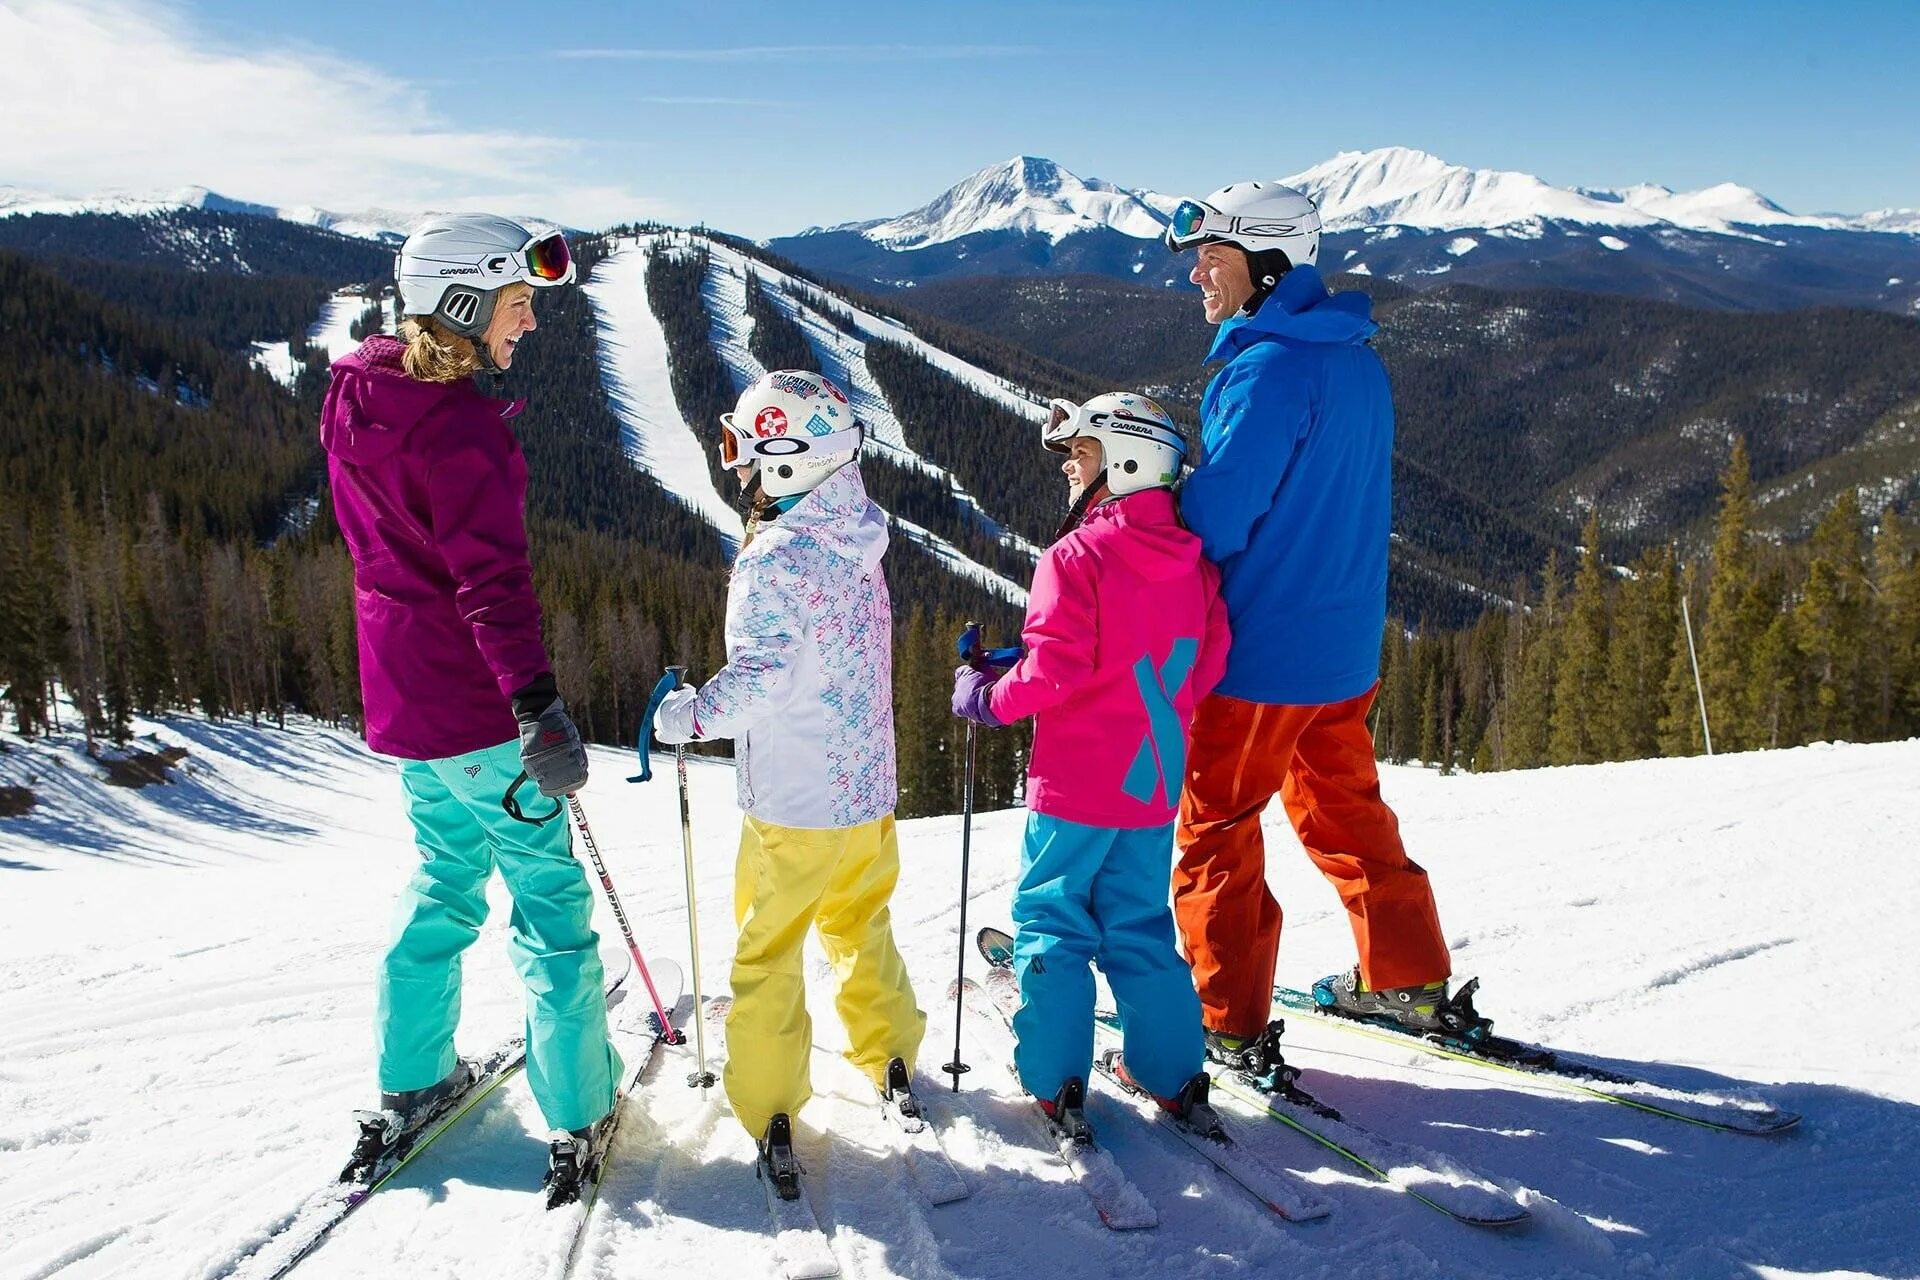 Катание на горных лыжах. Семья на горных лыжах. На лыжах всей семьей. Семья на сноубордах. Покататься на горнолыжном курорте